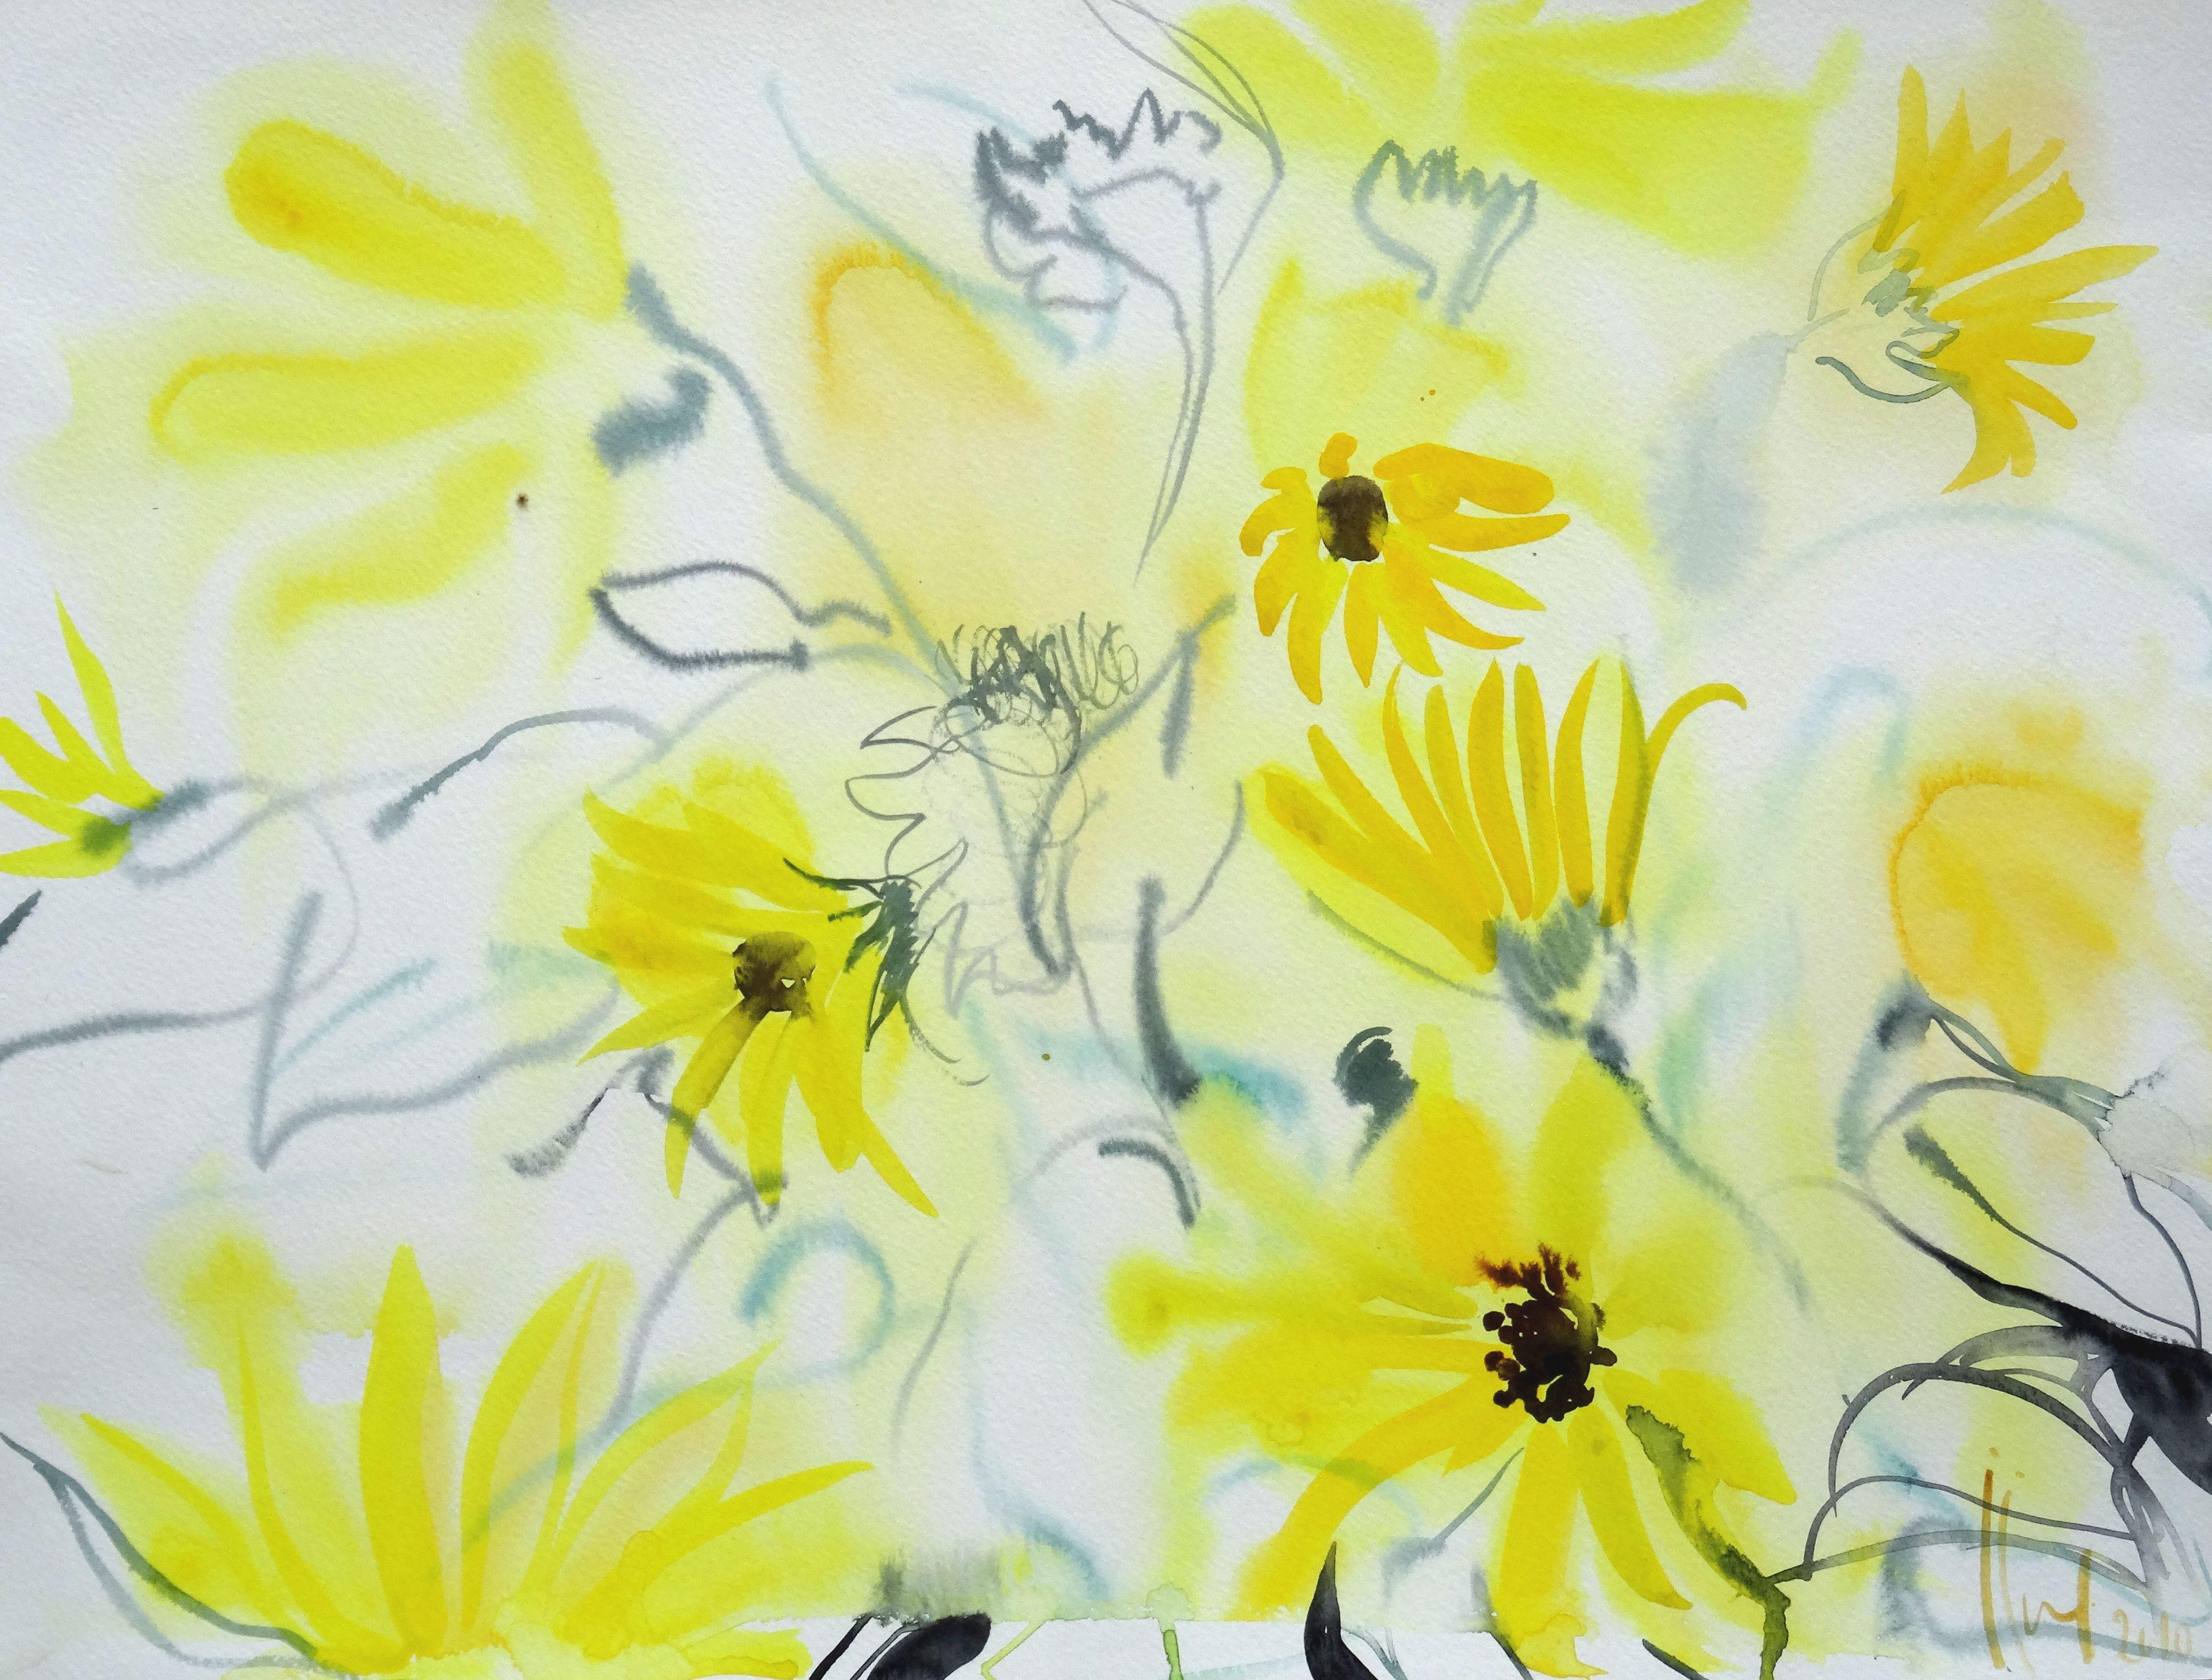 fleurs jaunes dans le jardin des Tuileries. 2010. Aquarelle sur papier, 24x50 cm